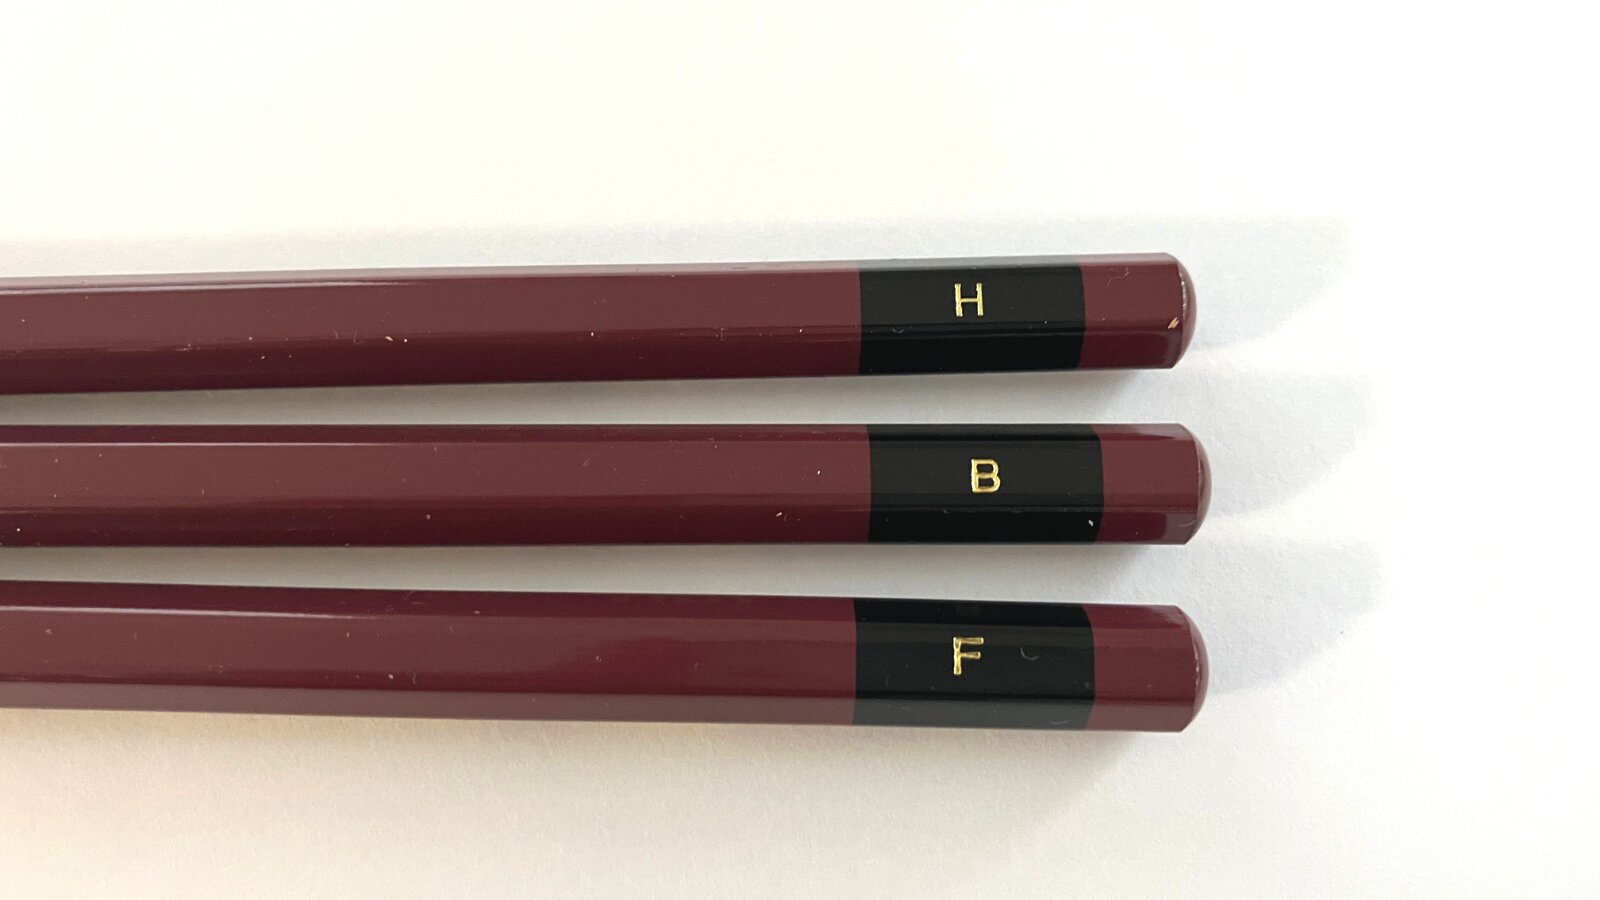 H,B,Fの鉛筆